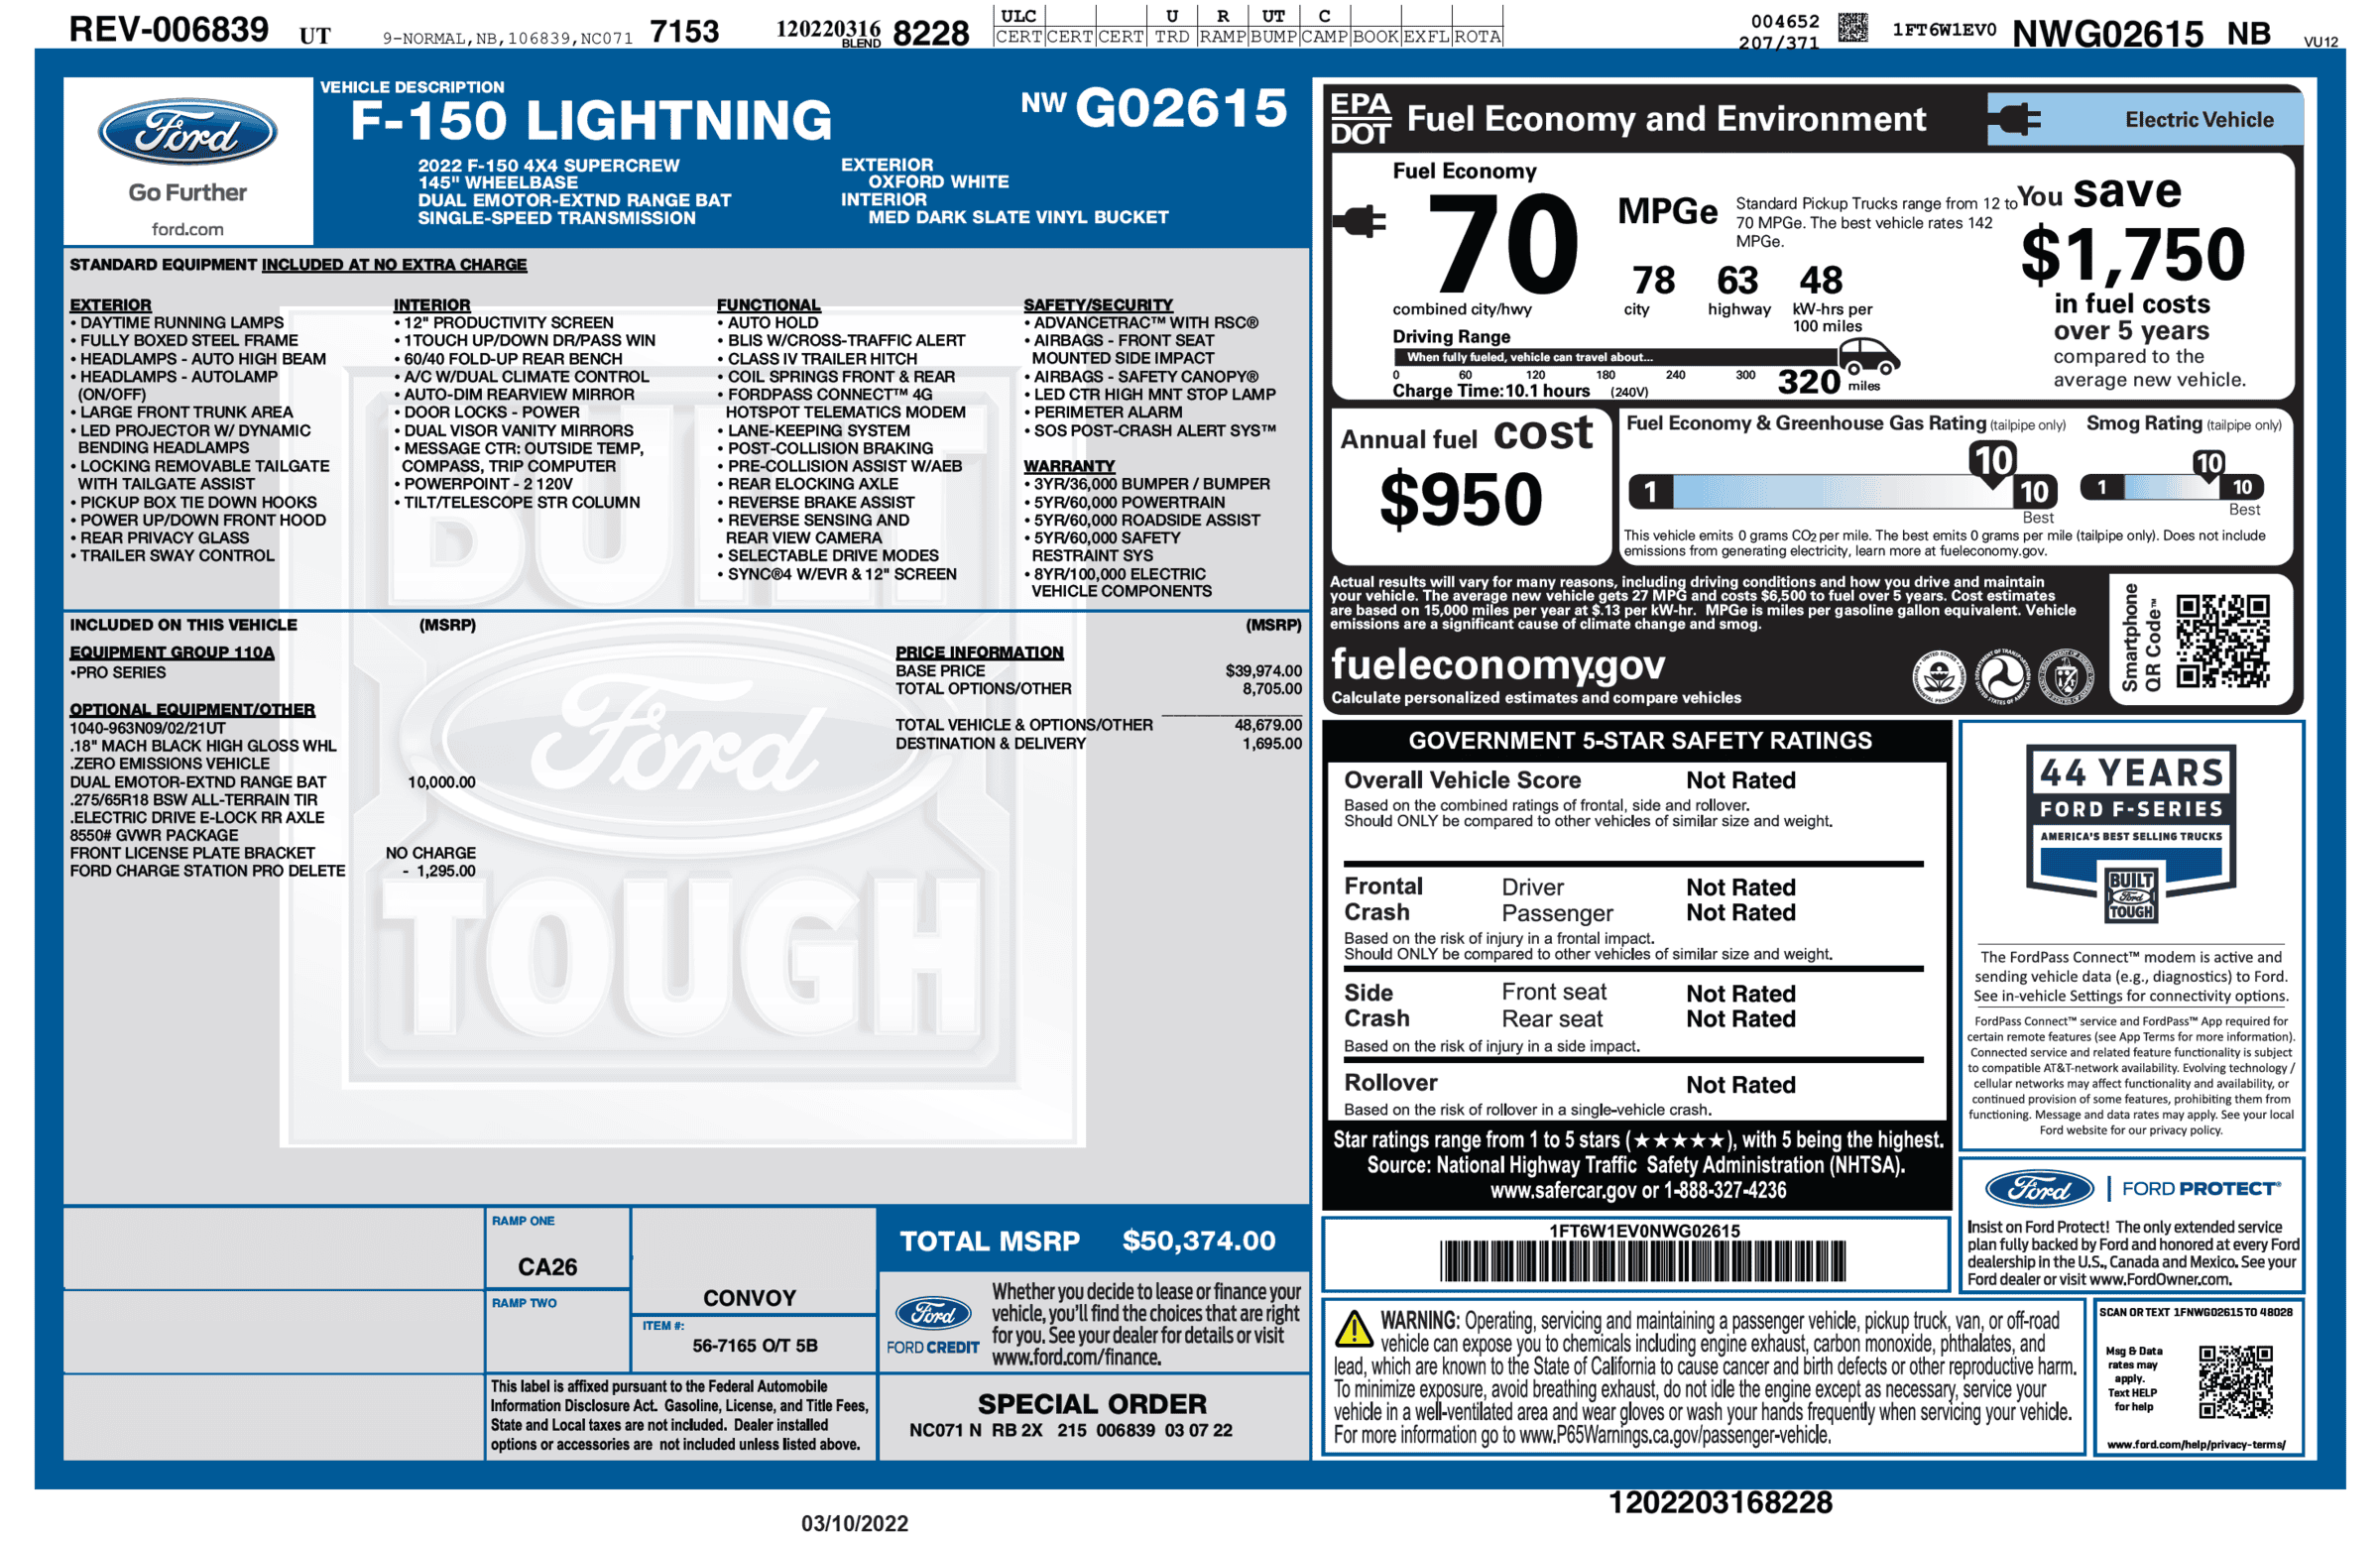 Ford F-150 Lightning F-150 Lightning Official EPA Range MPGe Revealed in Window Sticker (Base + Extended Range)! 1647534873969